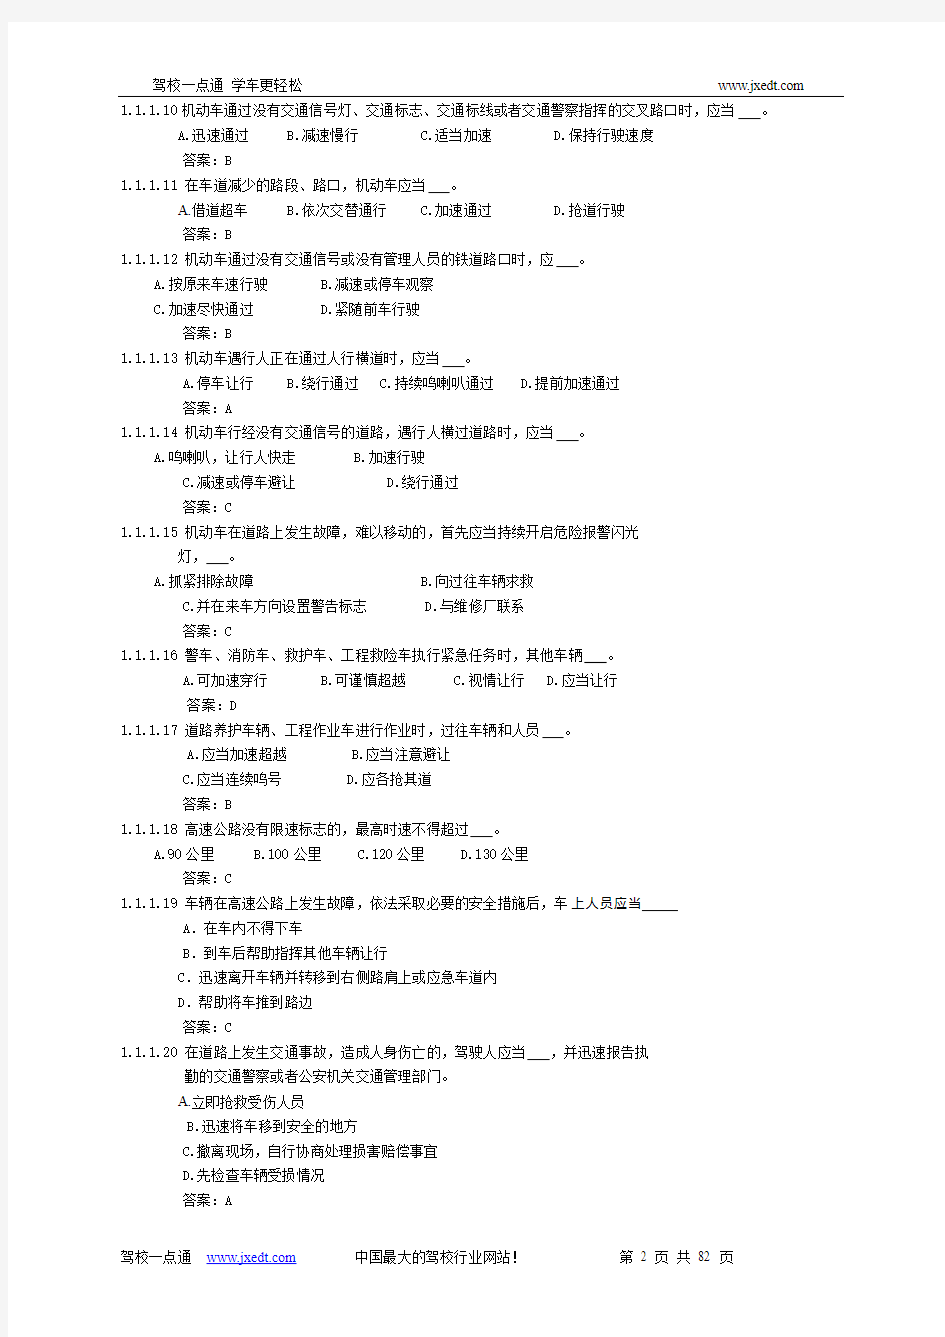 2011_C1驾照交规考题题库(共725题)